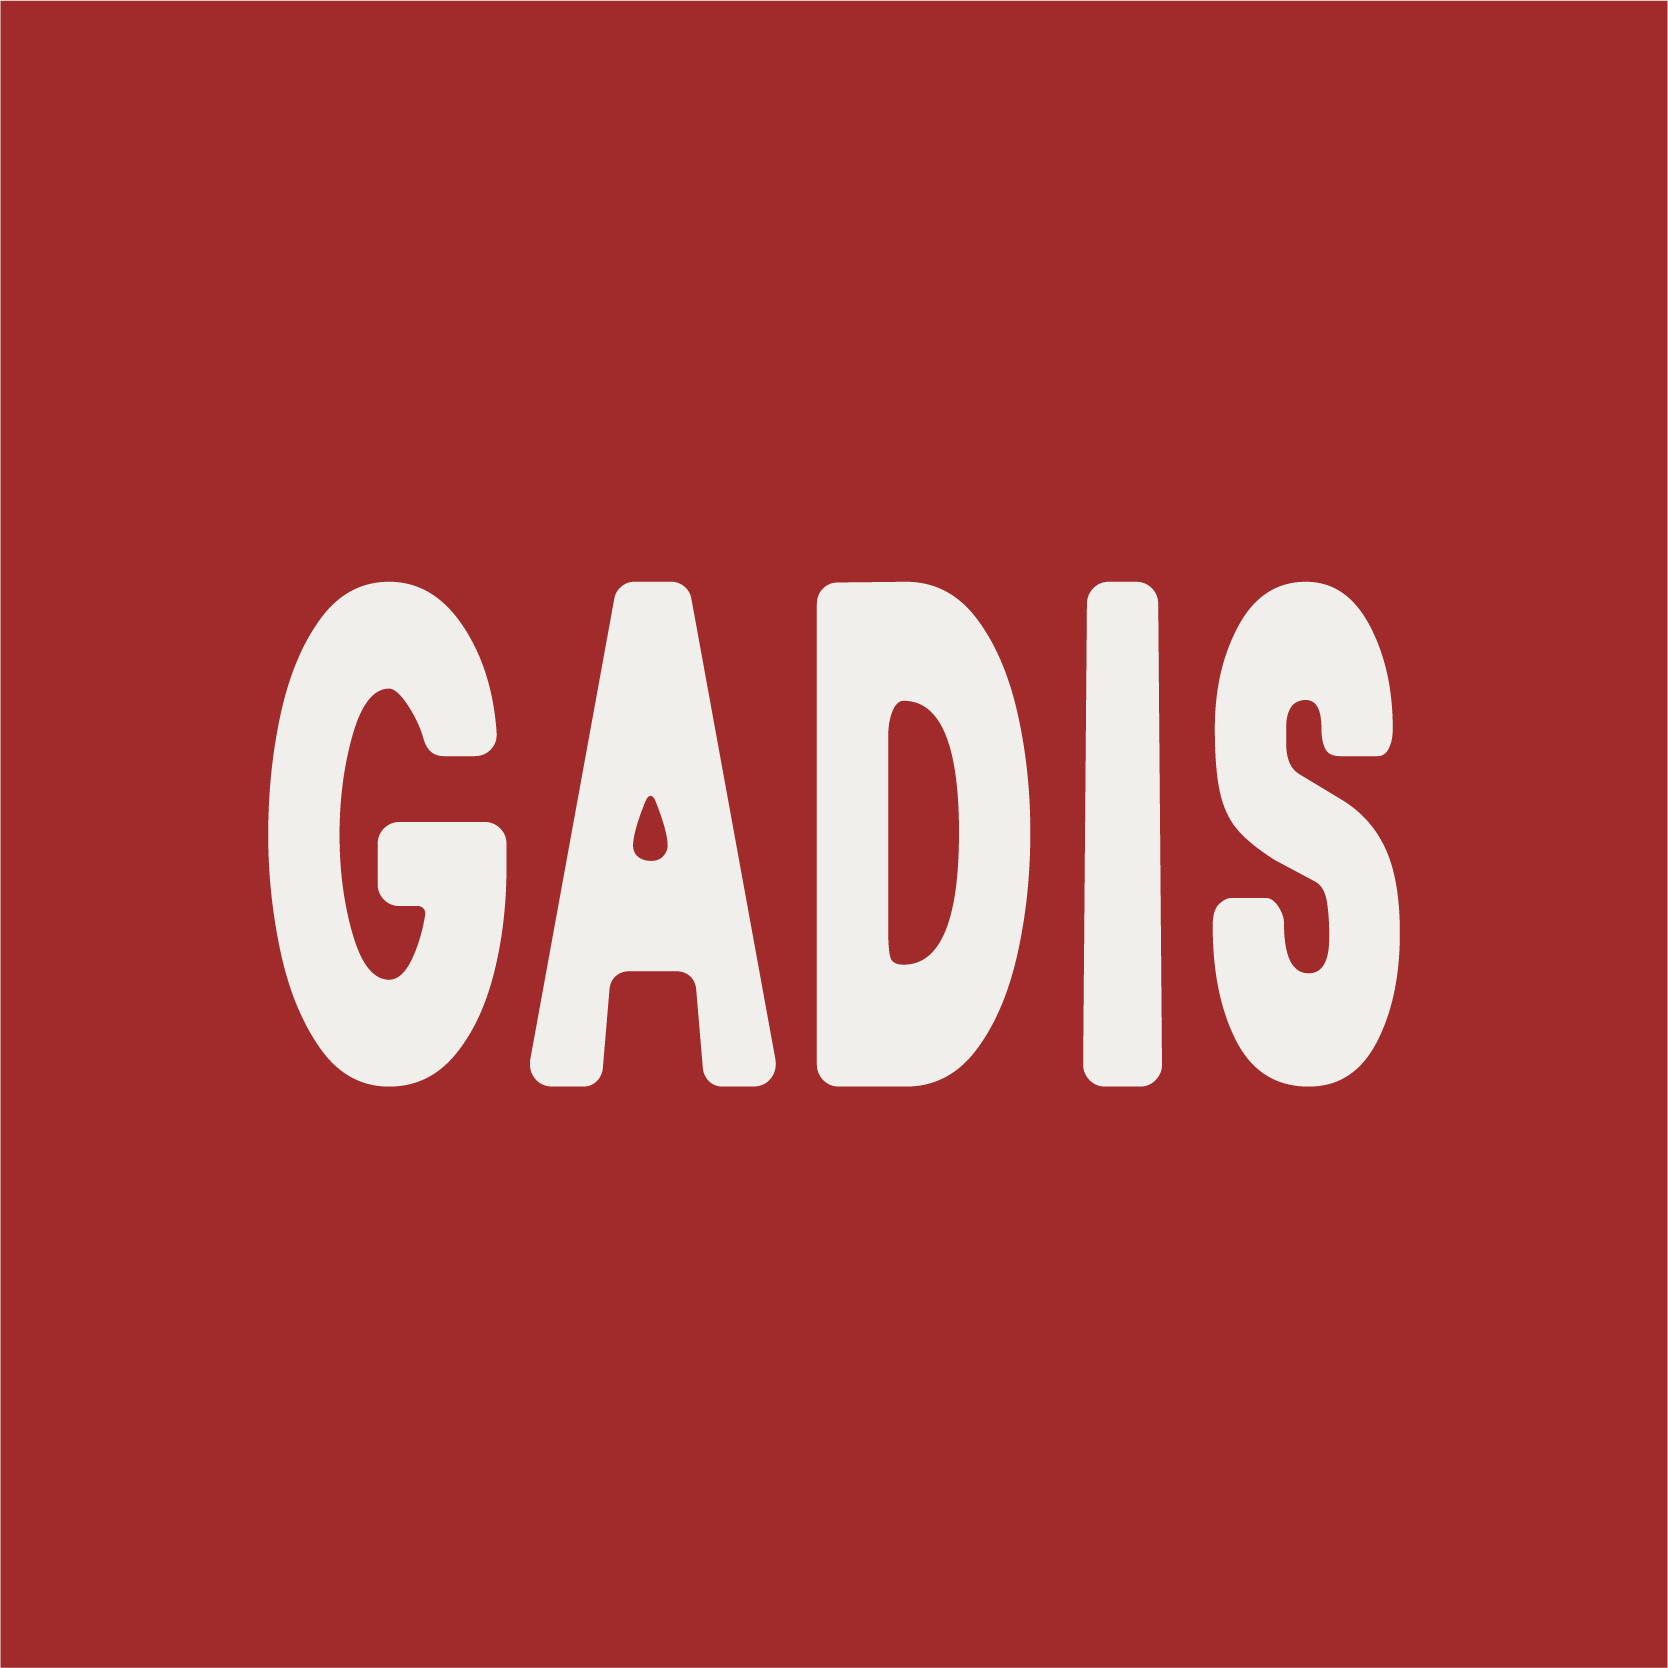 GADIS